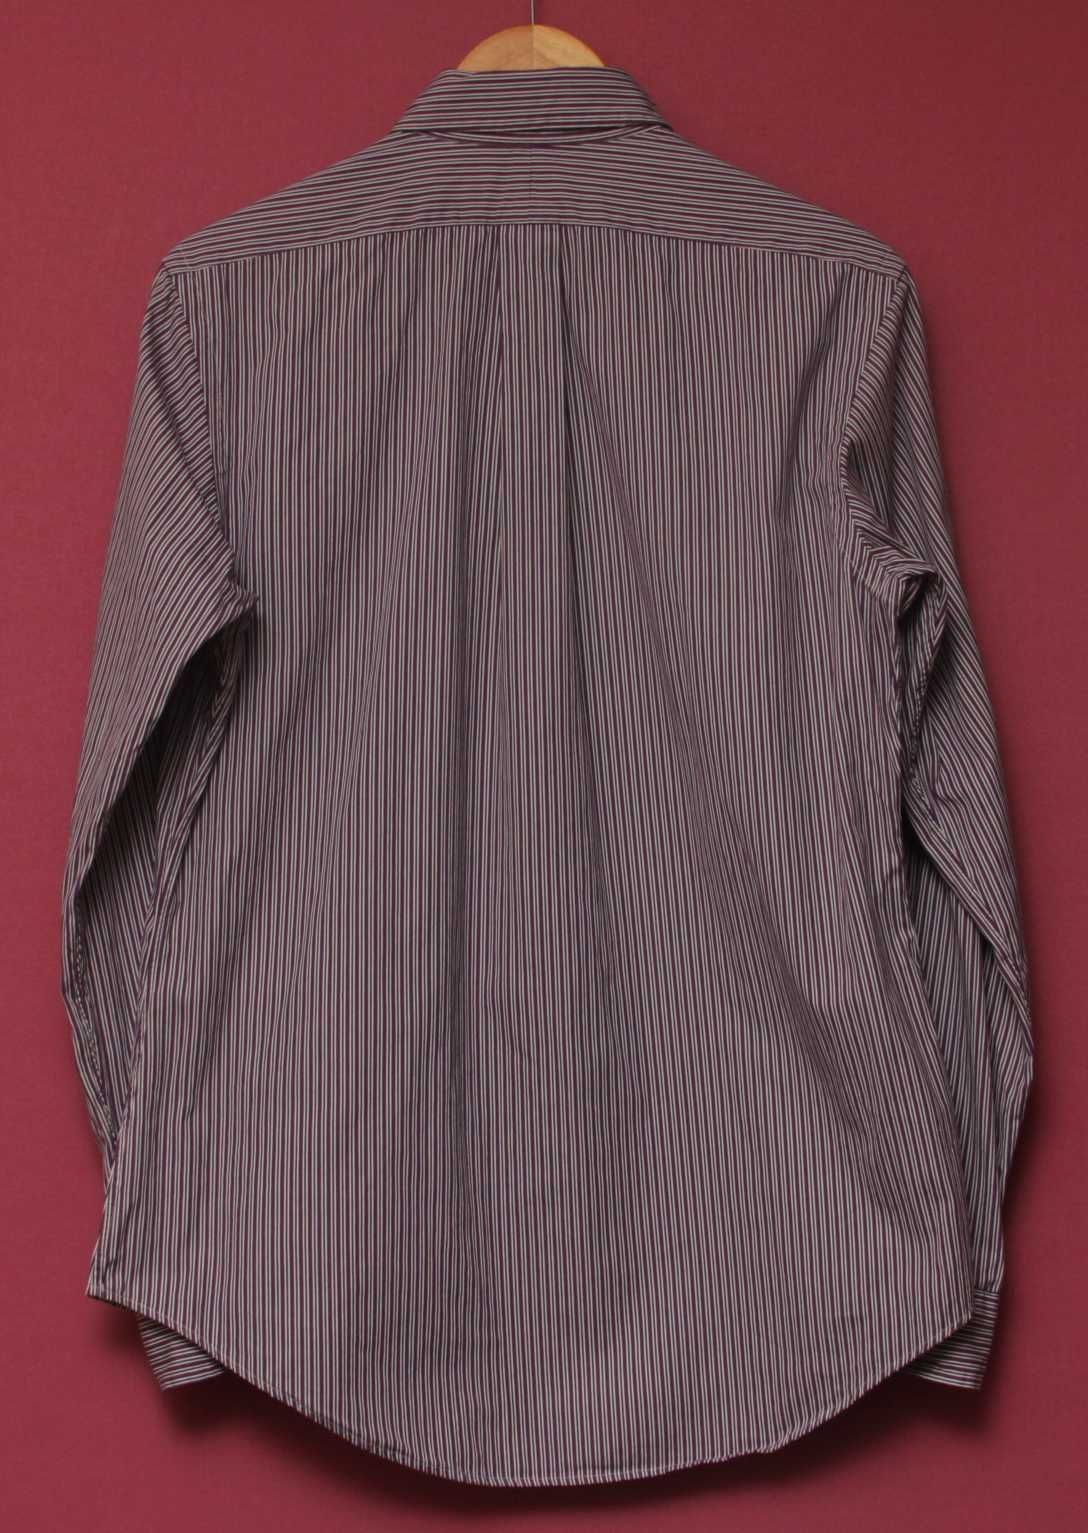 Polo Ralph Lauren M 15 1/2 39  2-ply   рубашка из хлопка свежие колле